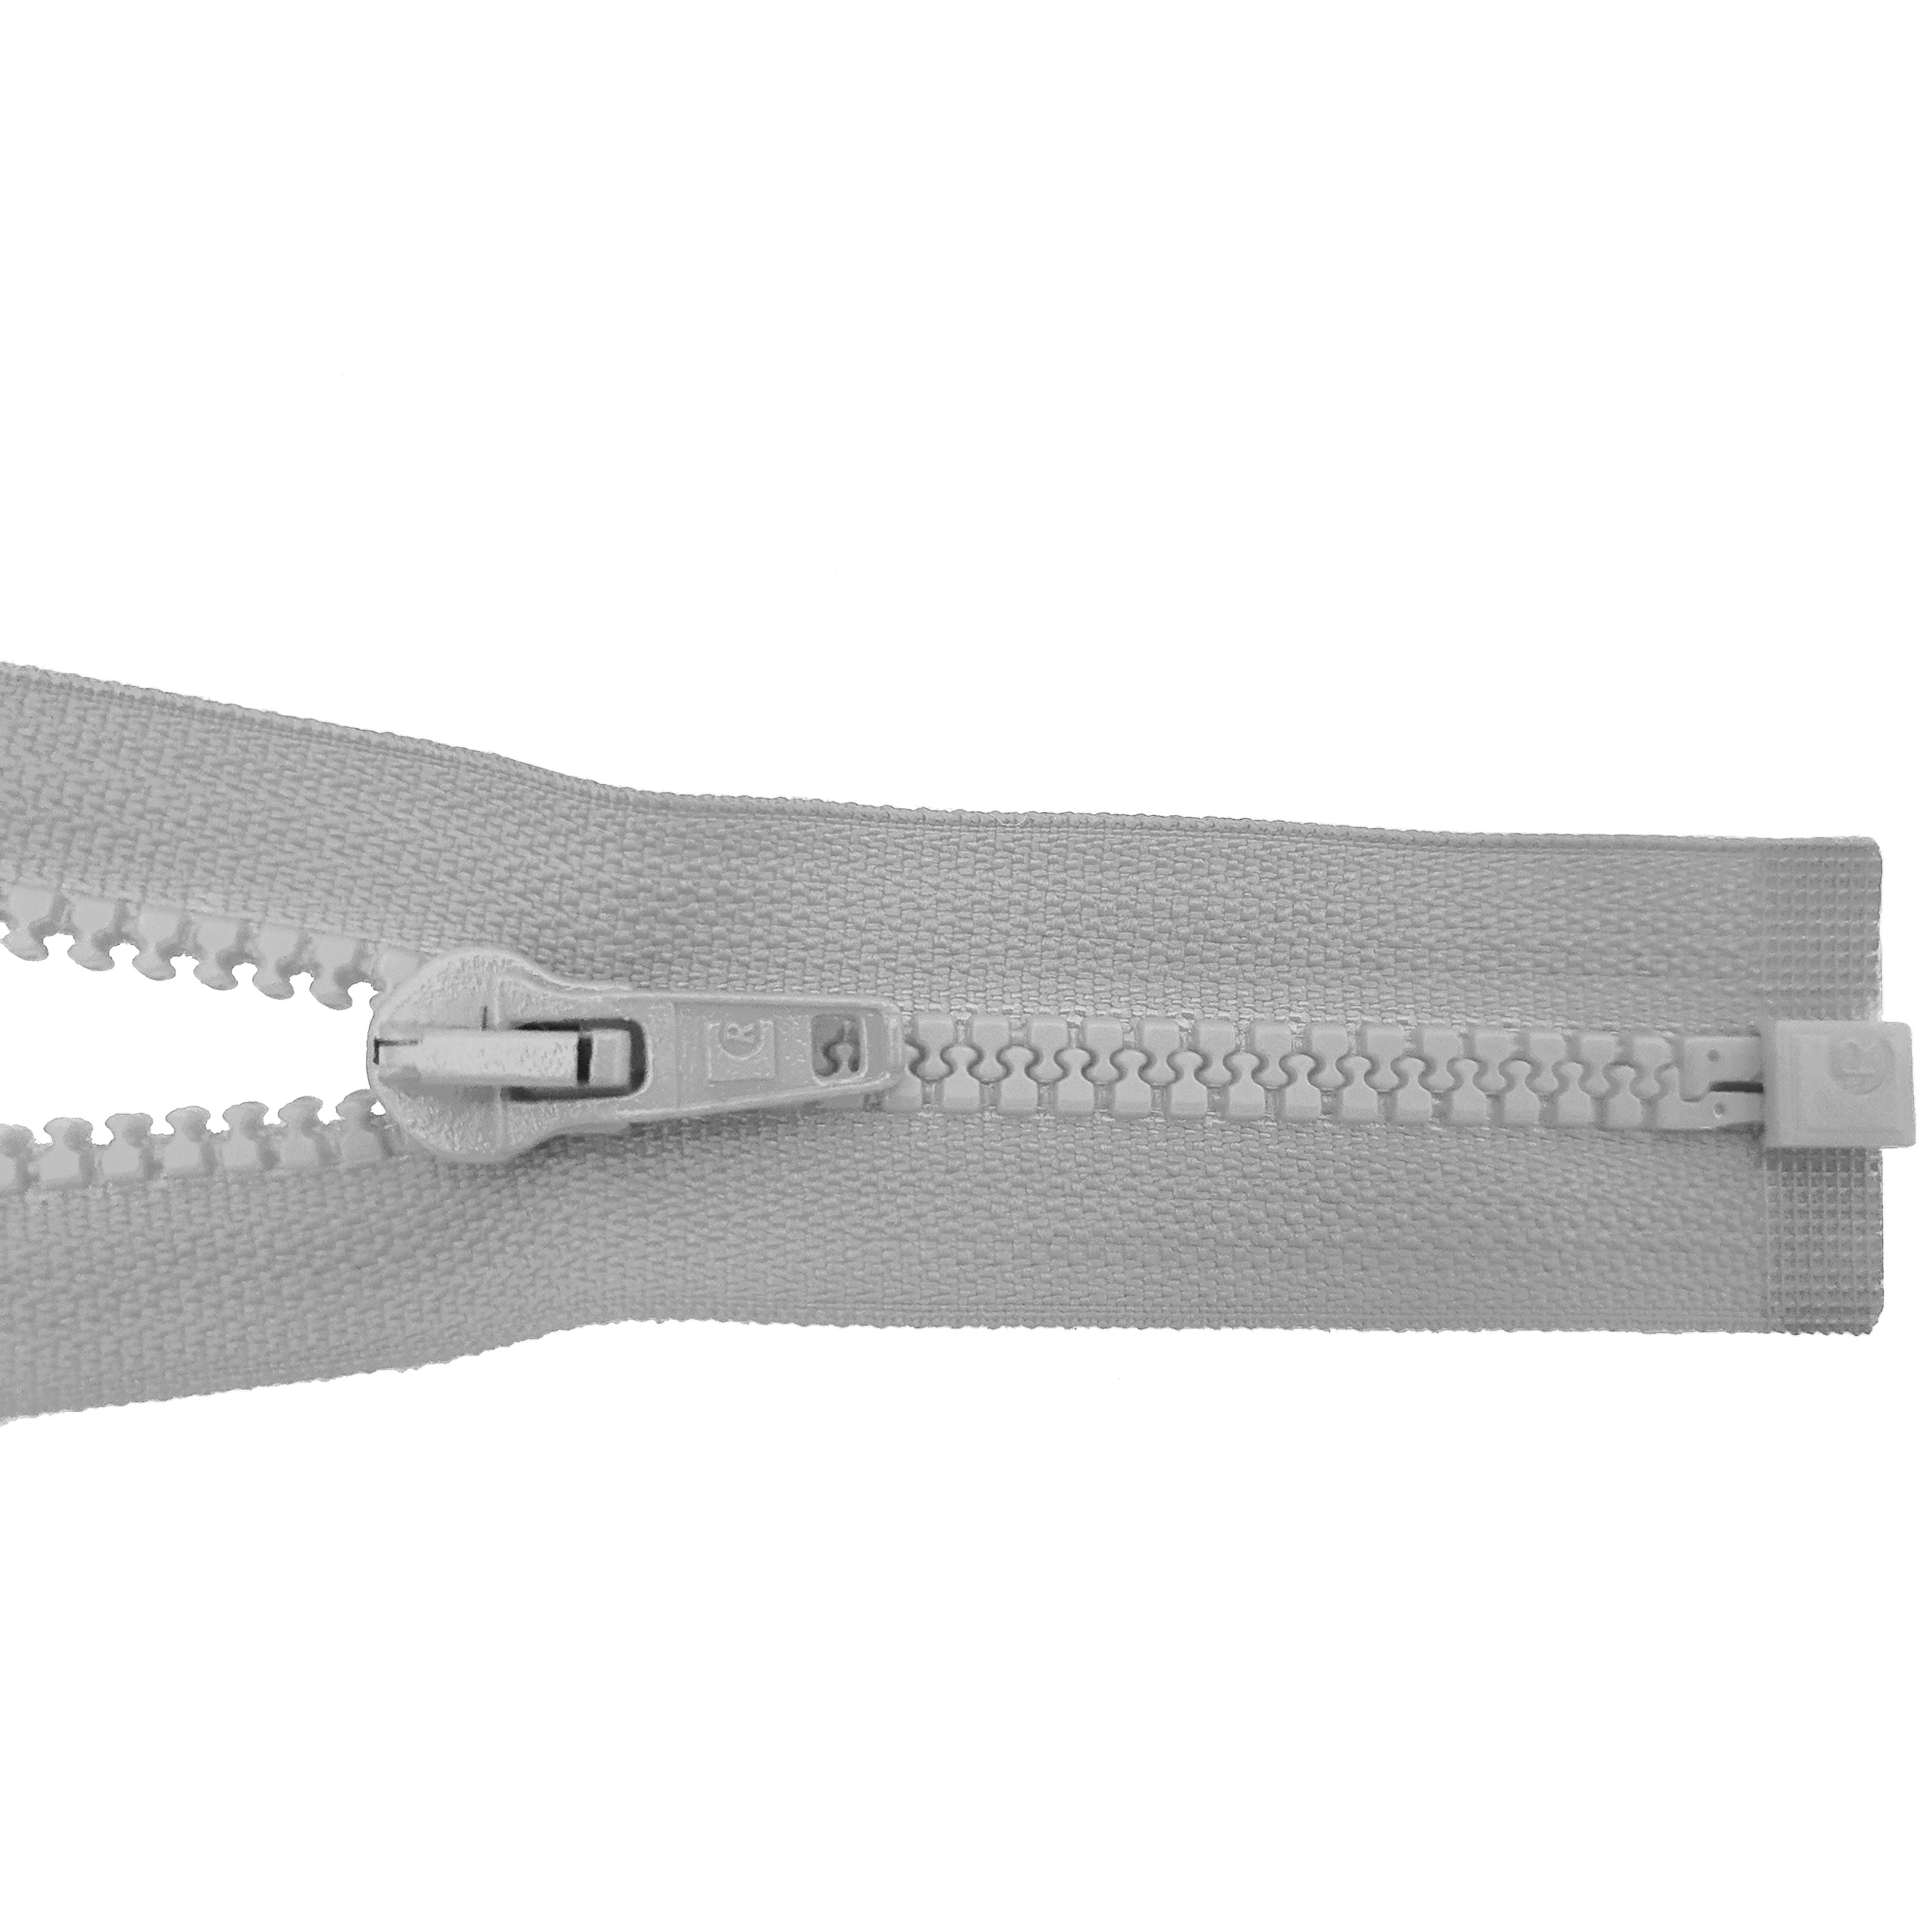 Reißverschluss 70cm, teilbar, Kstoff Zähne breit, hellgrau, hochwertiger Marken-Reißverschluss von Rubi/Barcelona